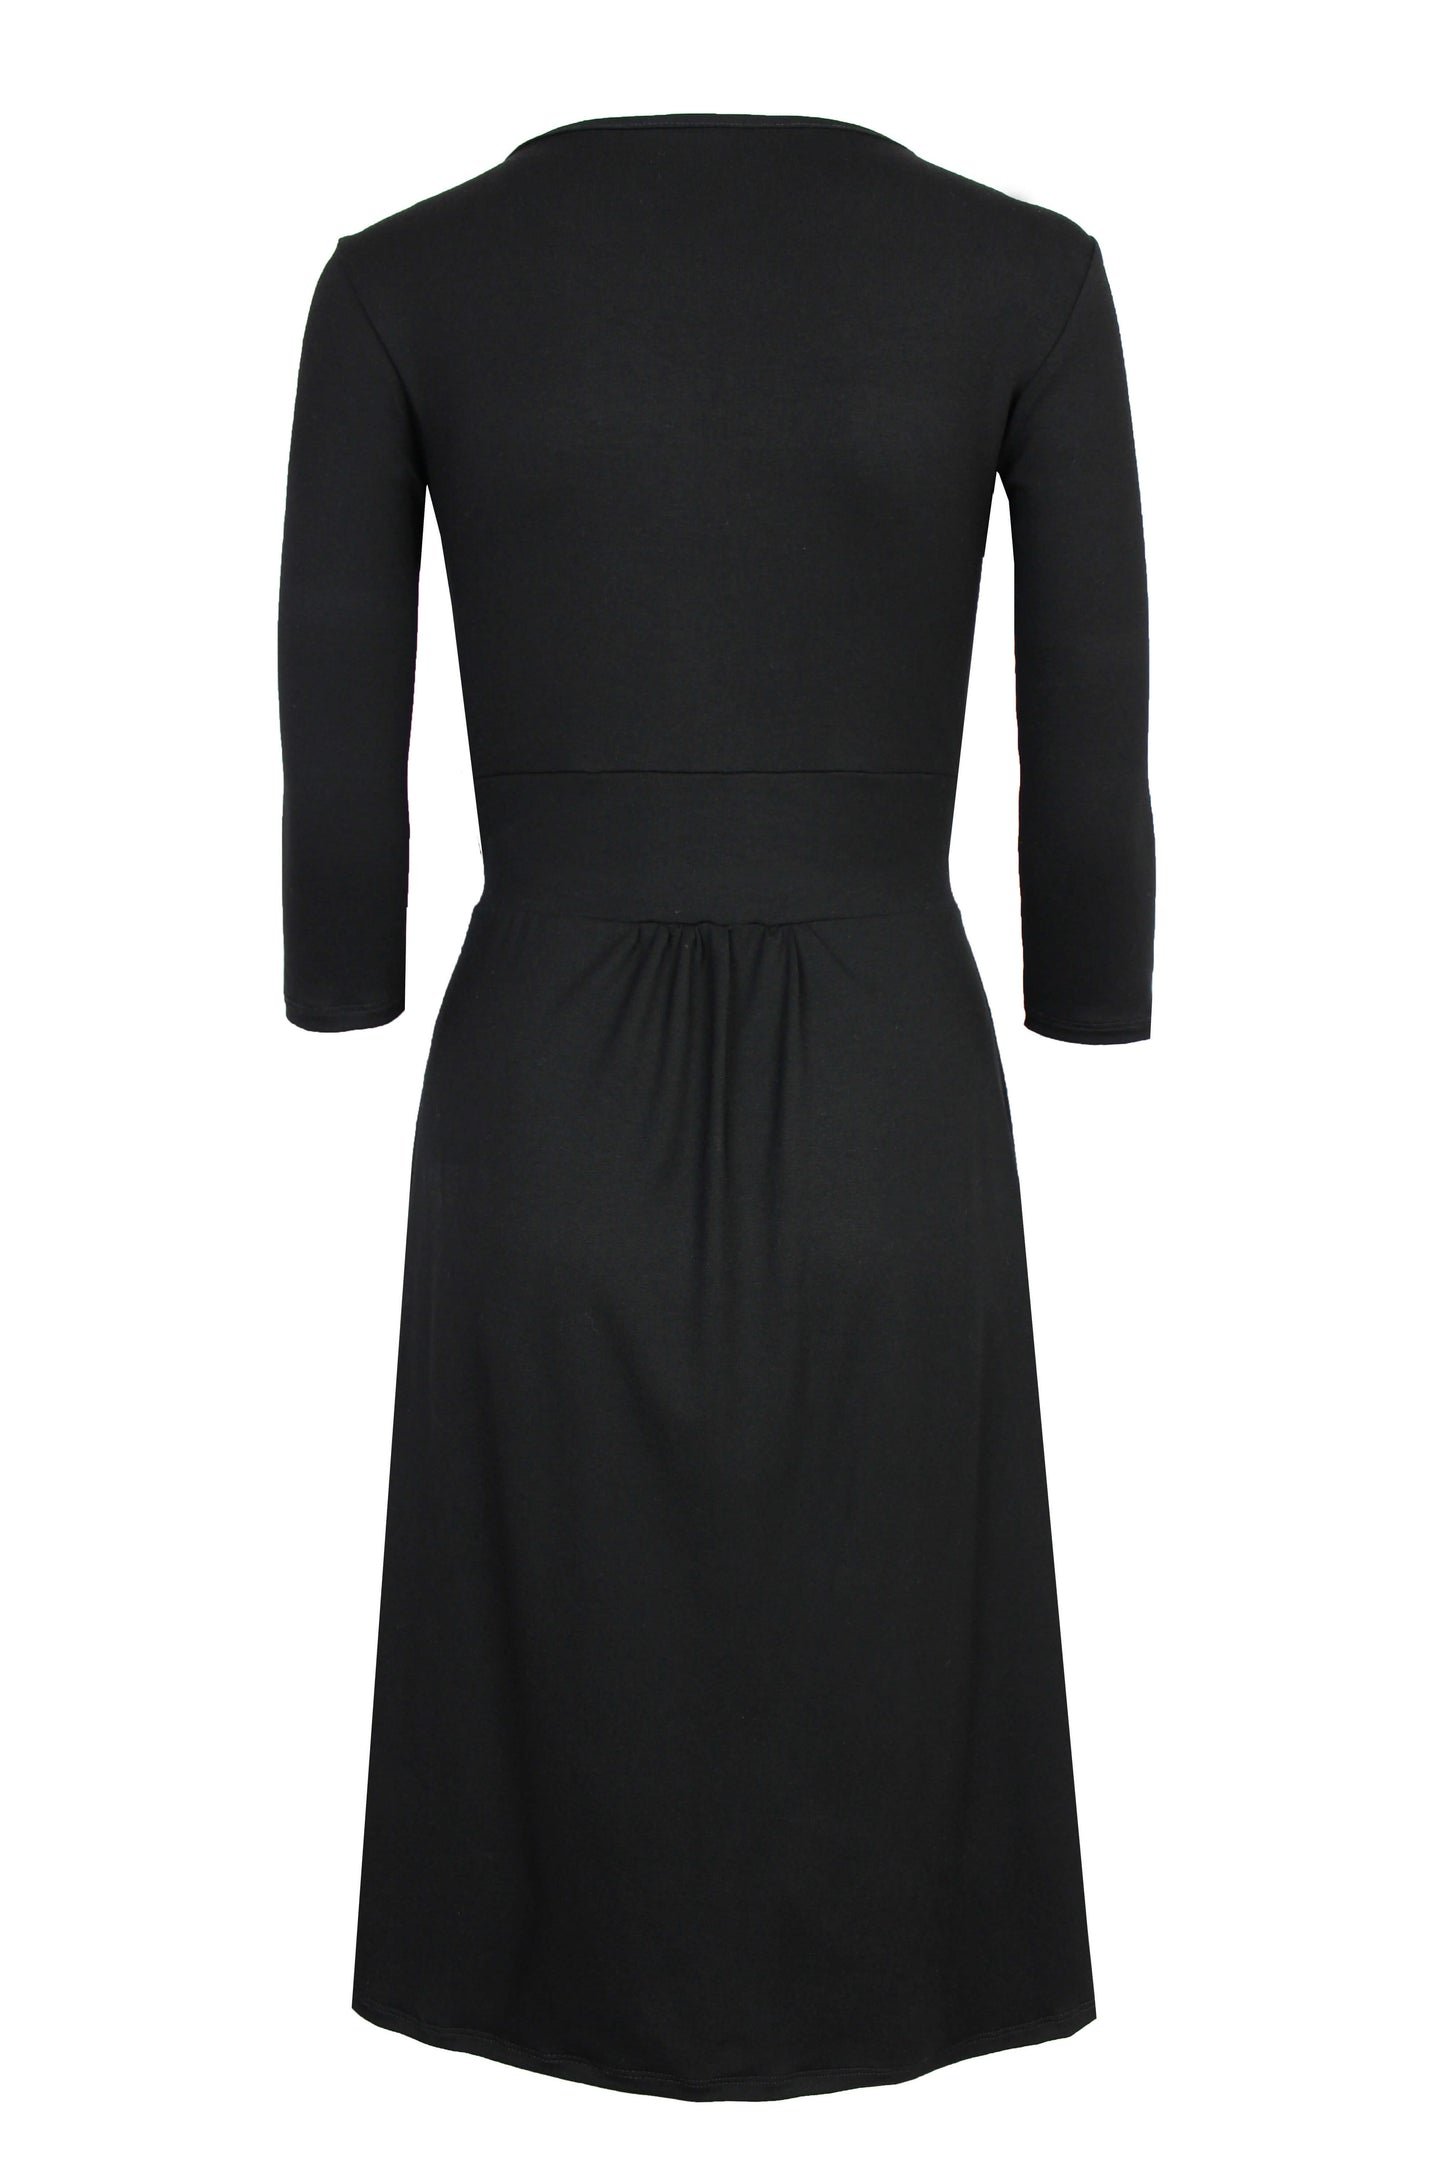 Elegantes, schwarzes Kleid aus Viskosejersey mit 3/4 Ärmeln und Raffungen von LA.LUKA Berlin in der Rückansicht.